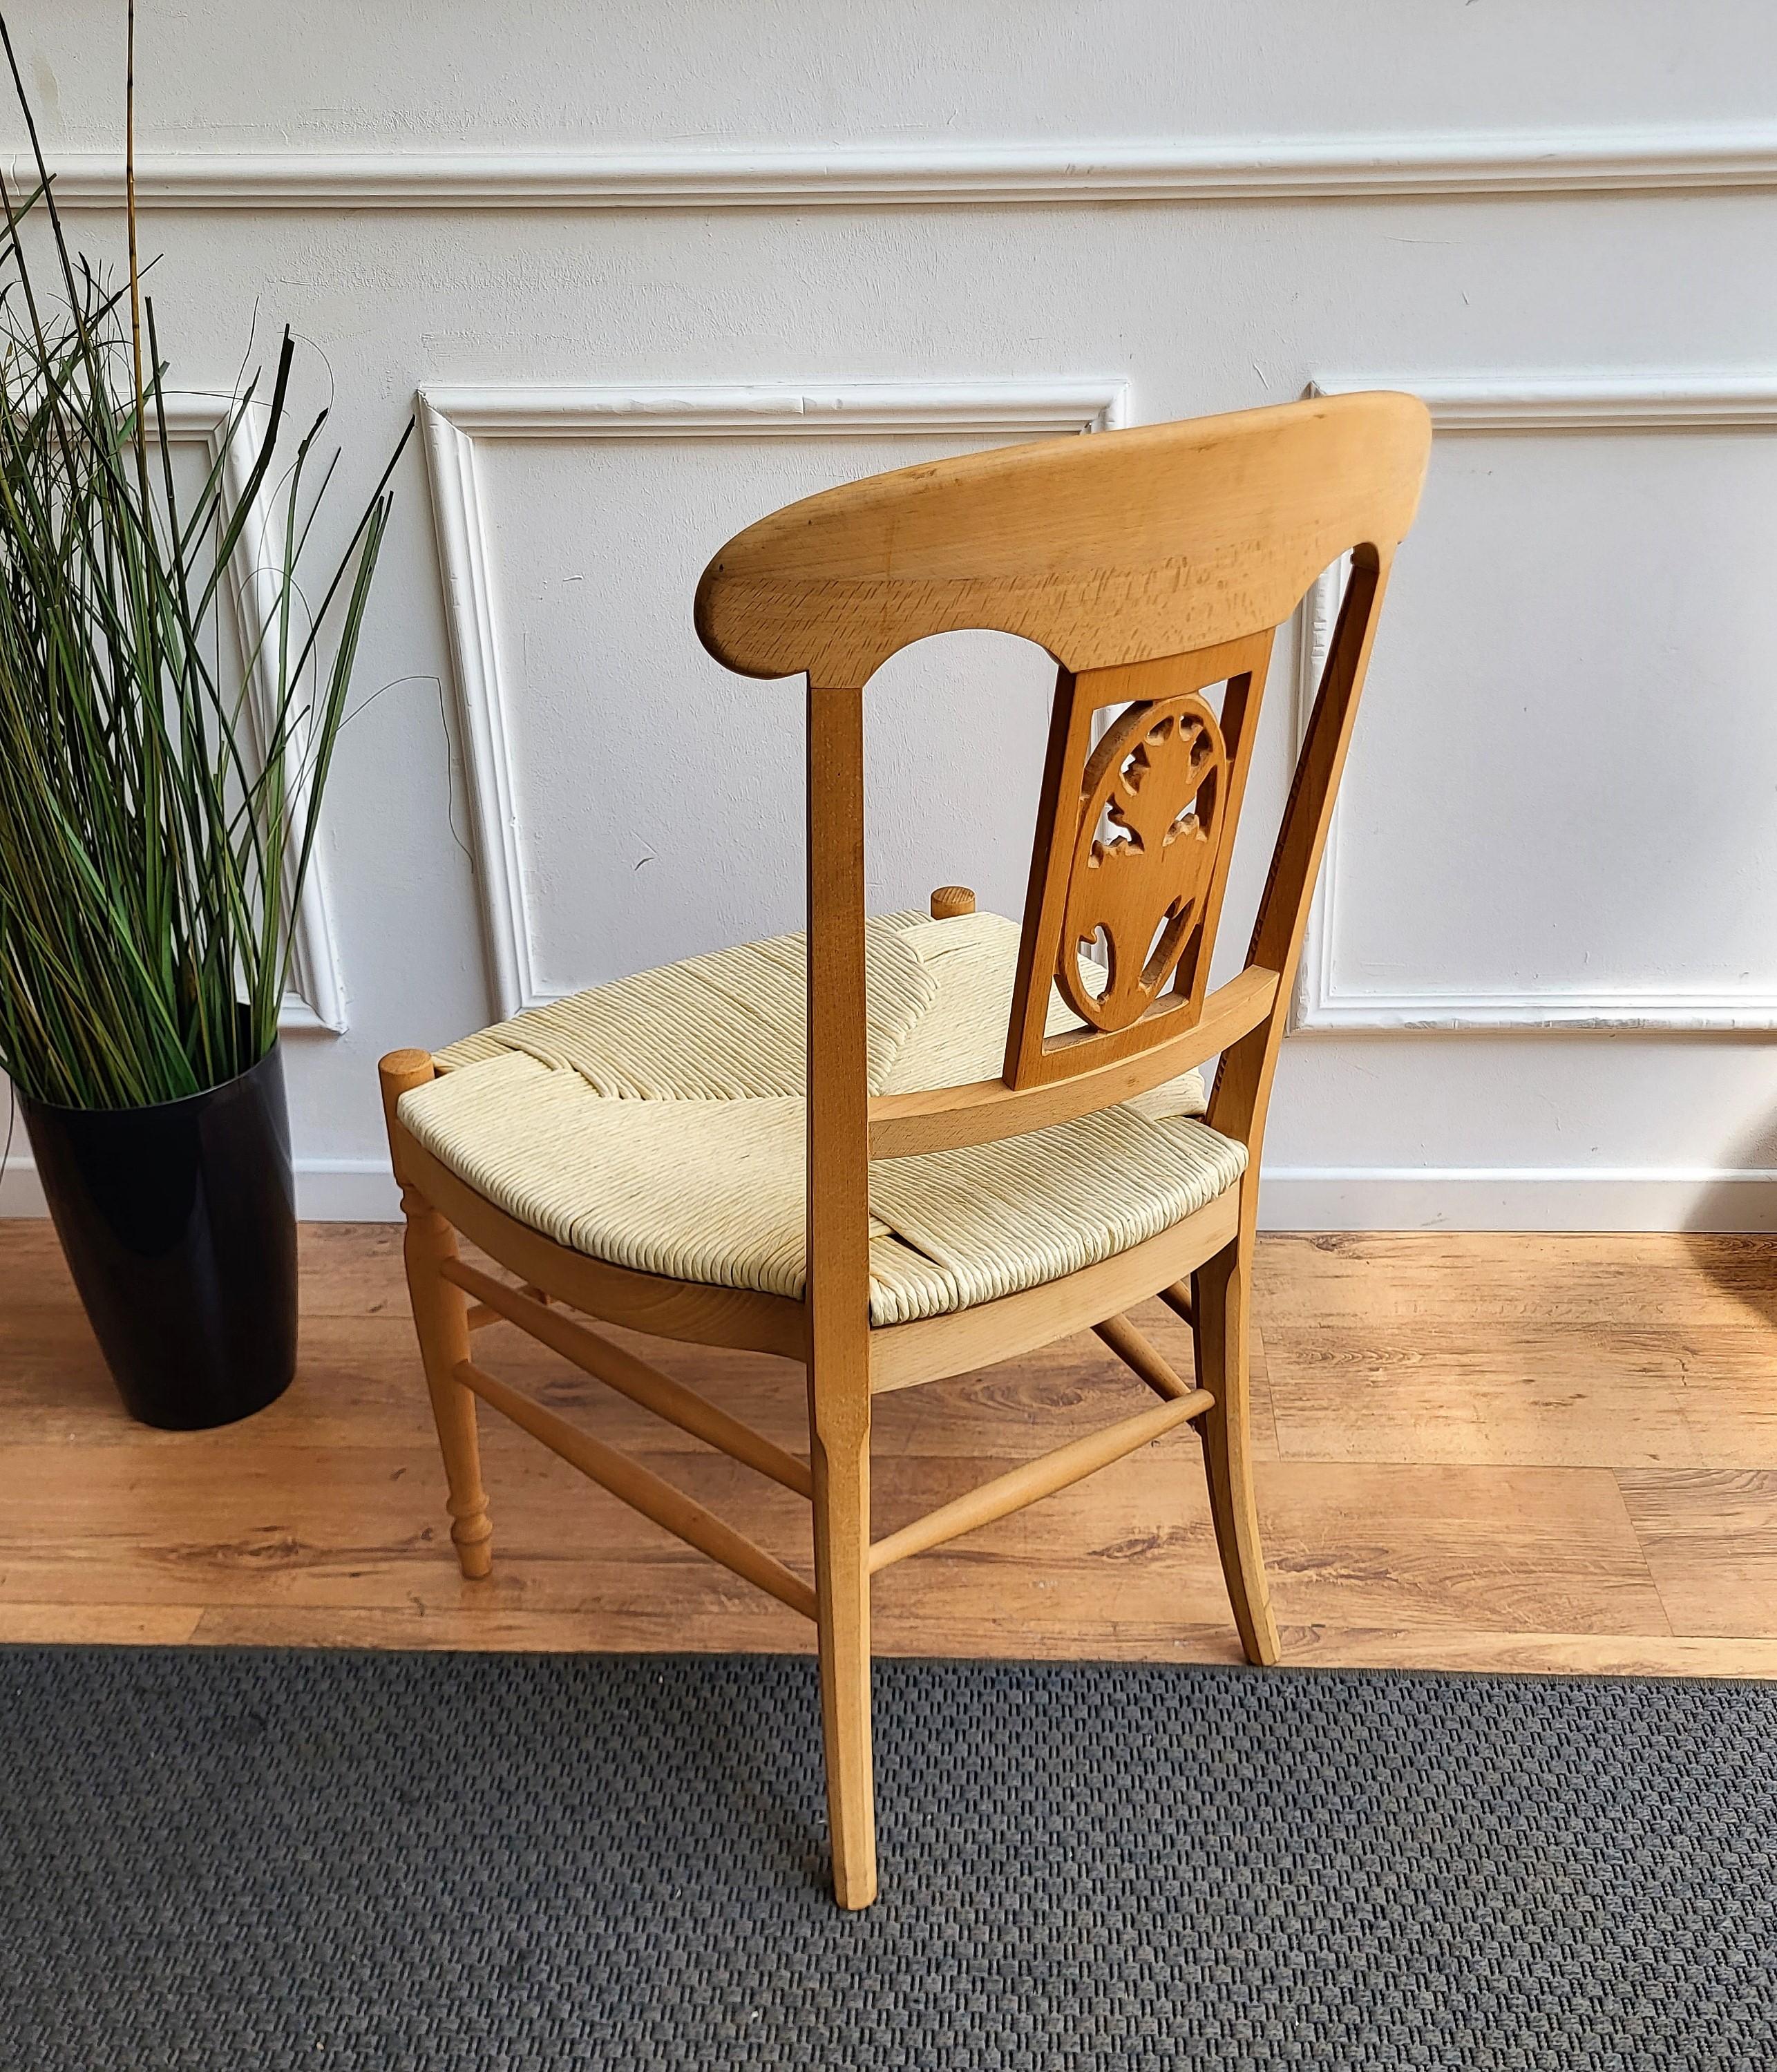 Italienischer Sessel mit geschnitztem Holz und geflochtenem Seil (Cord)